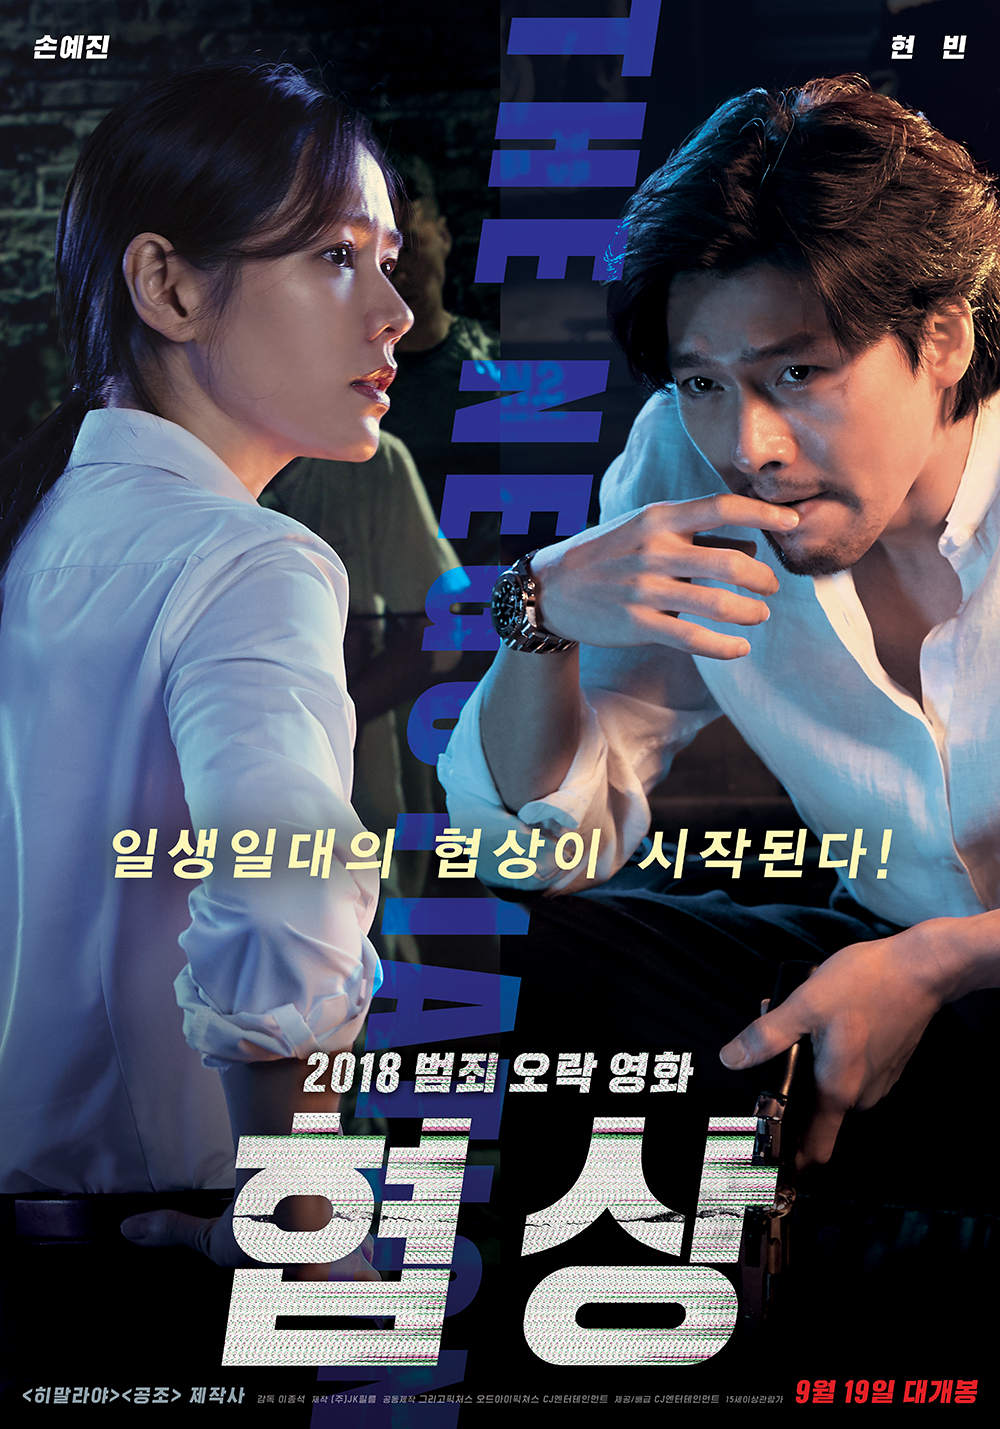 Hyun Bin Son Ye-jin dating - The negotiation